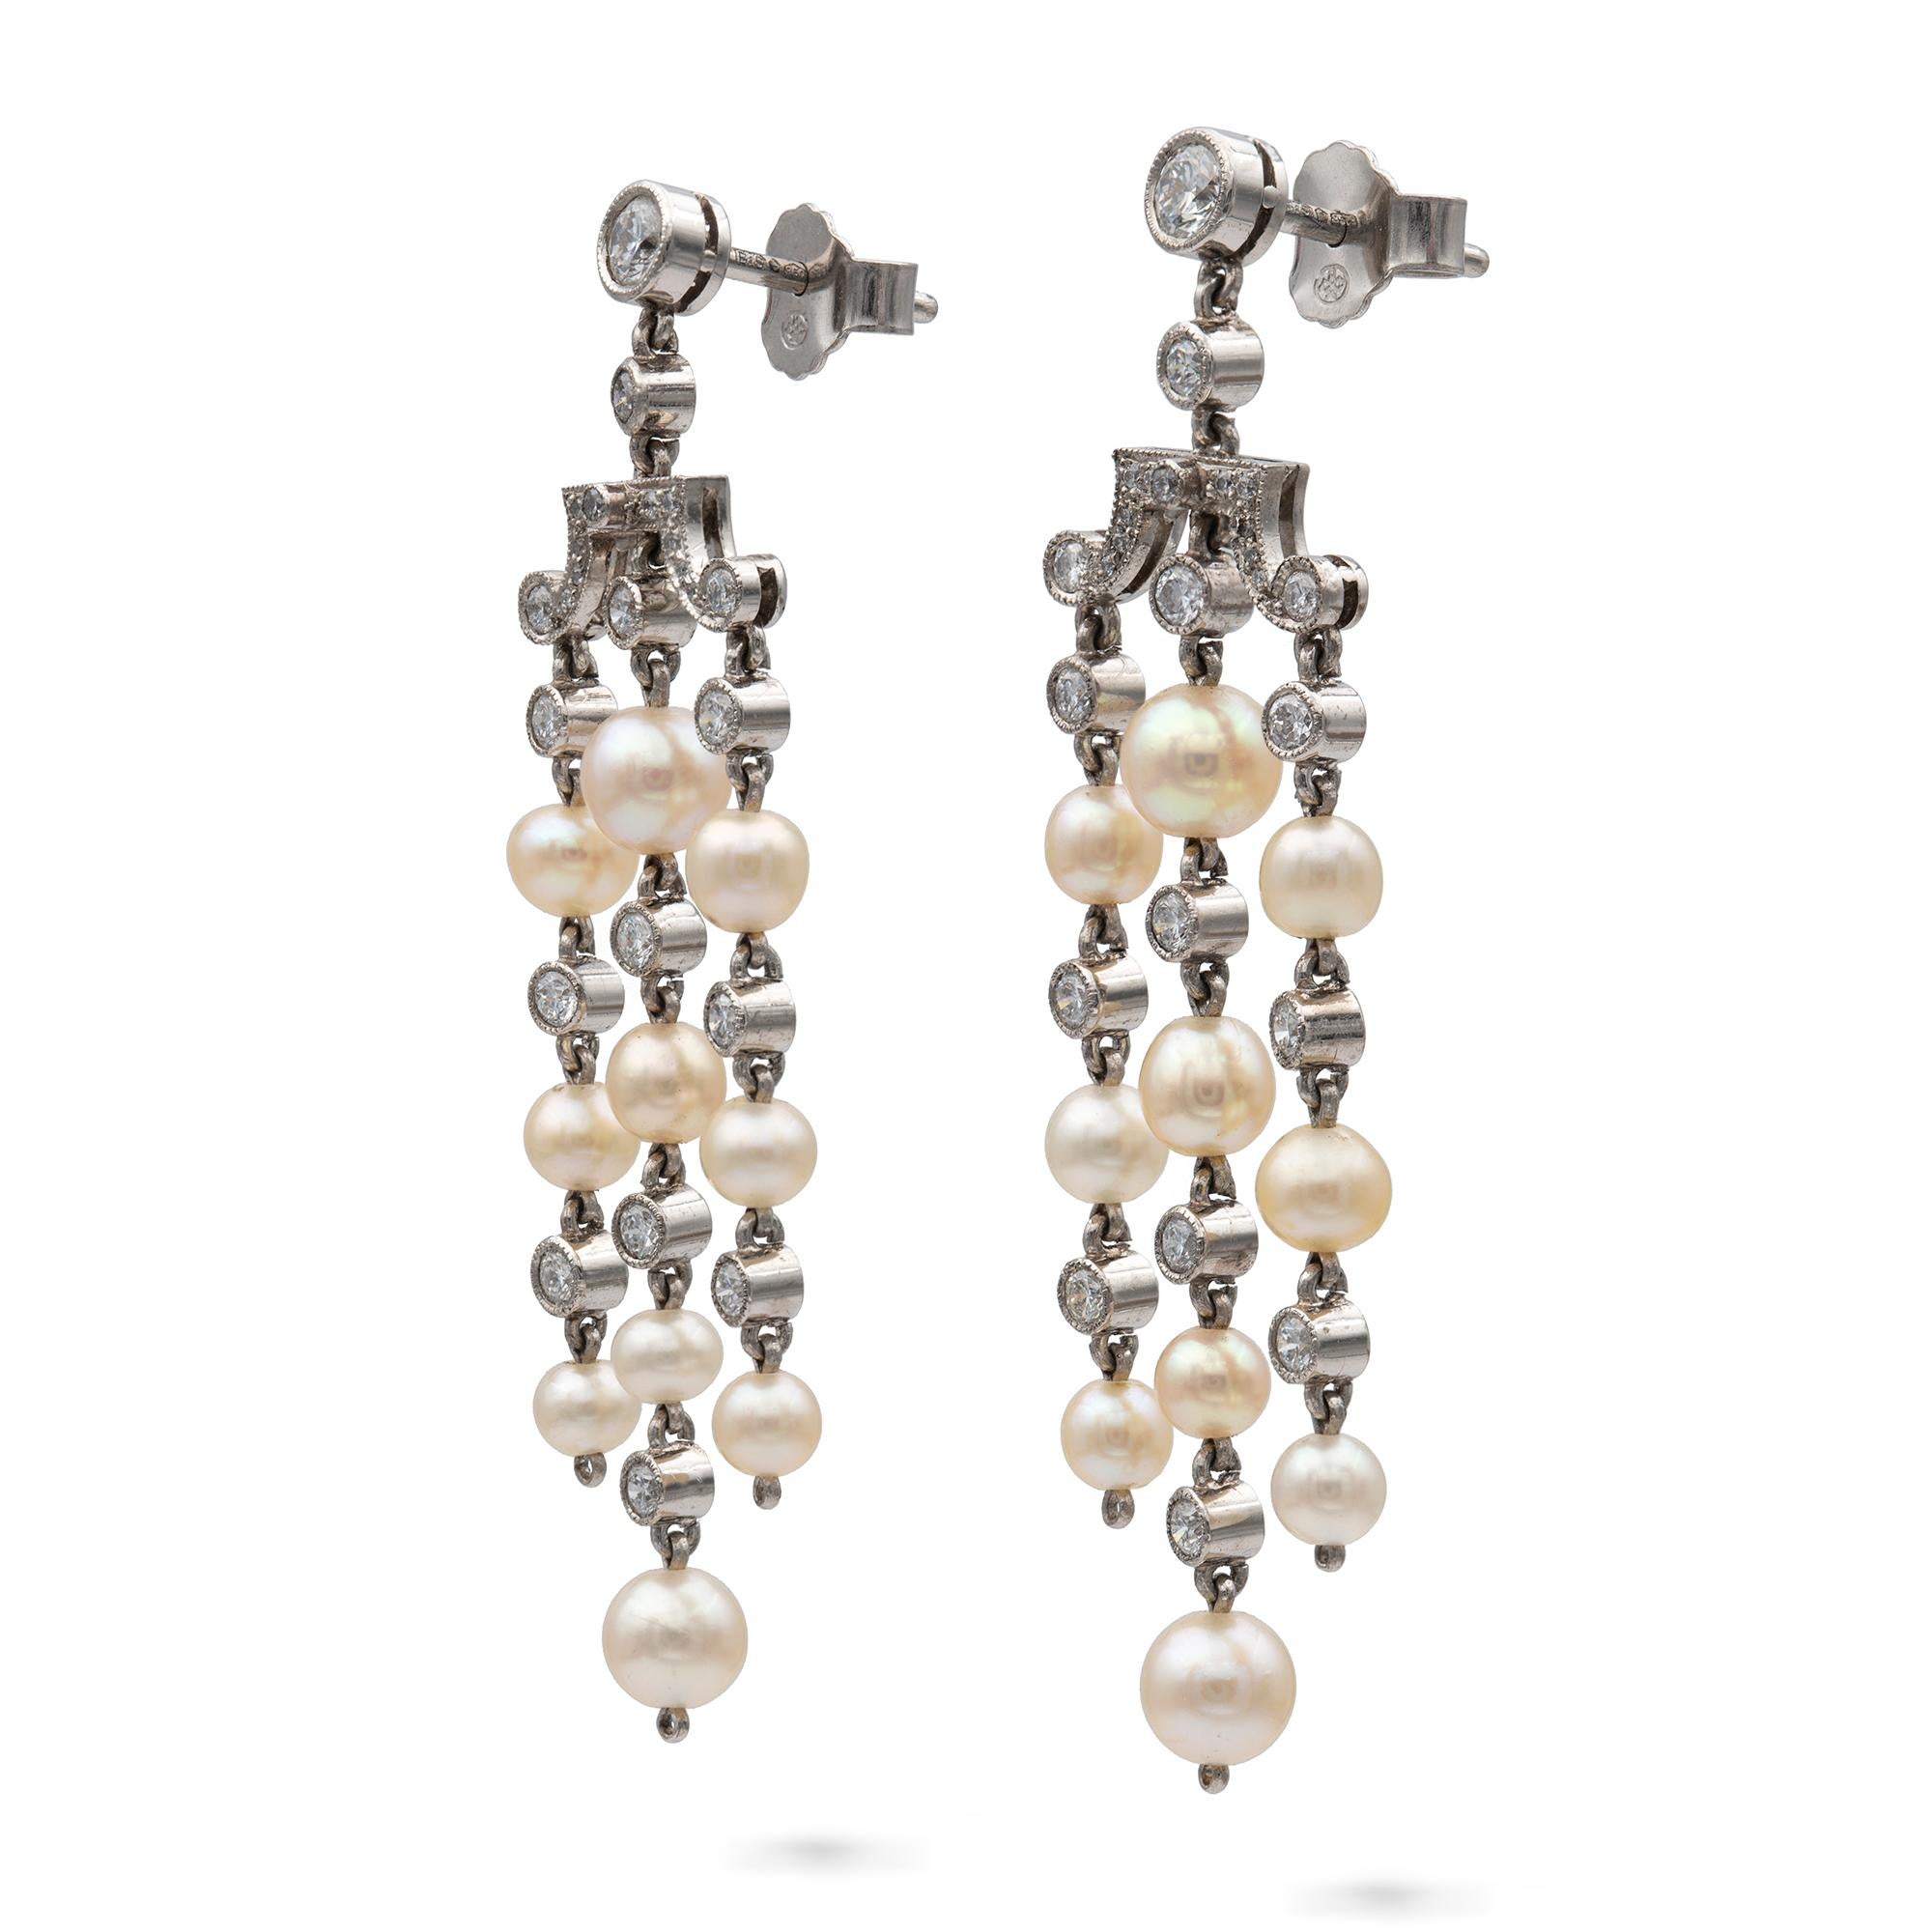 Une paire de boucles d'oreilles en perles naturelles et diamants, chaque boucle d'oreille comprenant trois glands de dix perles naturelles, accompagnés d'un rapport du Gem & Pearl Laboratory numéro 03833, avec un seul diamant entre chaque perle